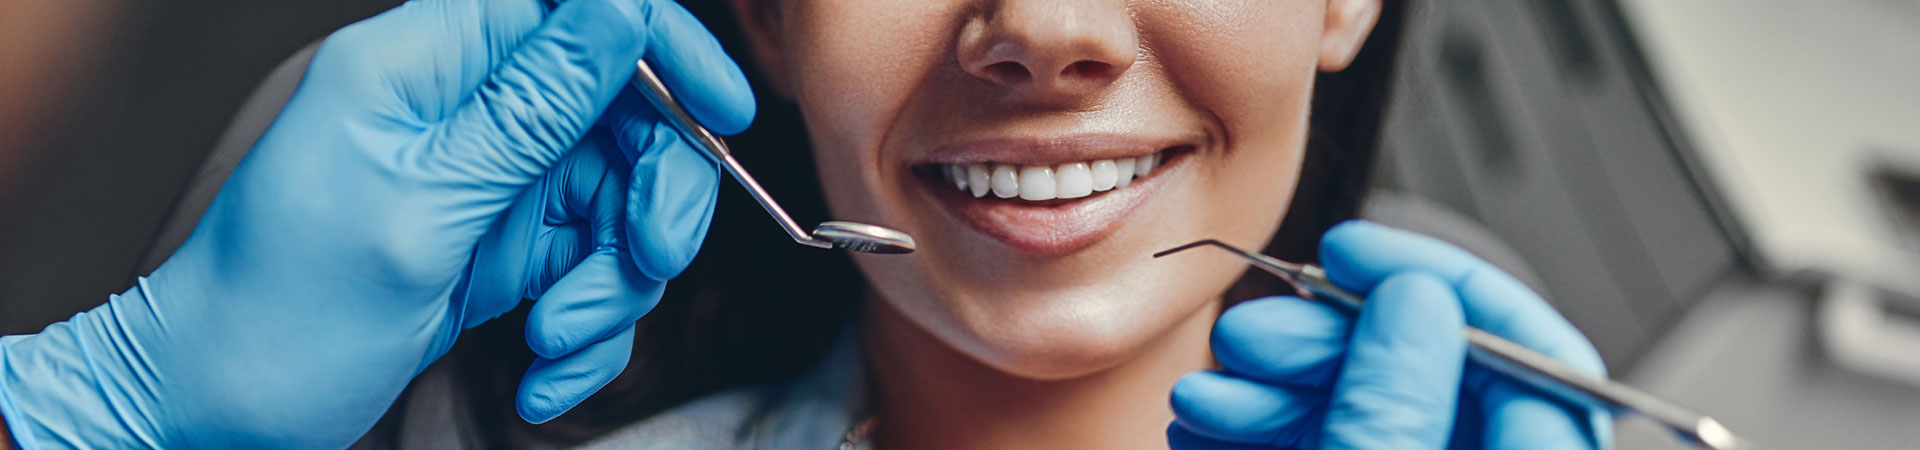 אישה מחייכת בזמן טיפול יישור שיניים